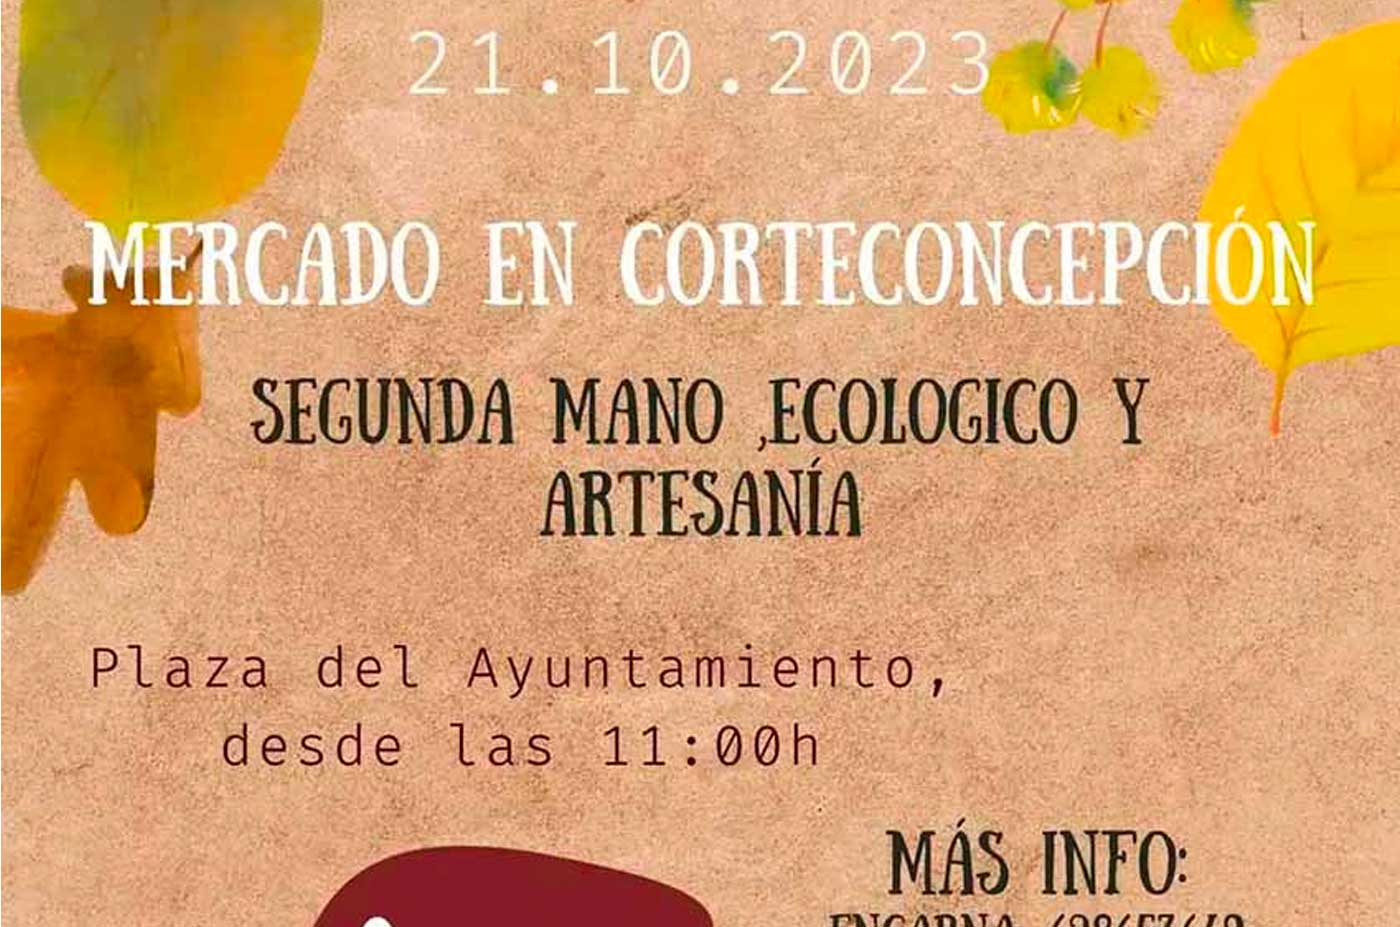 mercado de segunda mano y ecologico 21 de octubre 2023 Corteconcepcion Sierra de Aracena